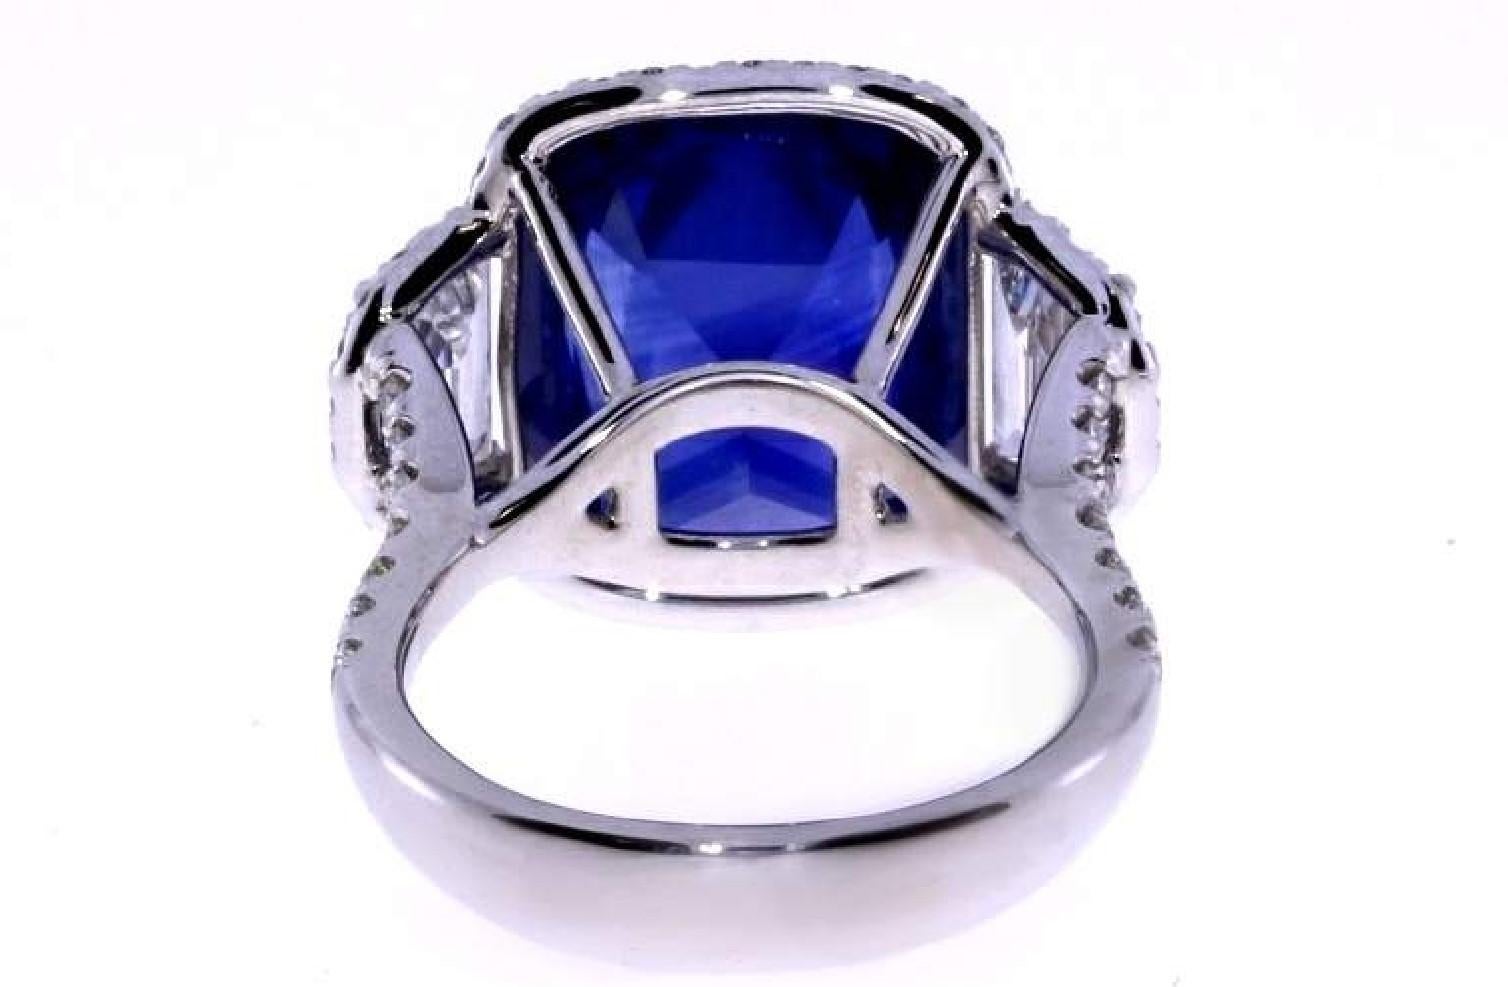 Fait à la main
Platine 
Saphir bleu naturel de taille coussin certifié par le GIA, 11,04 ct. 
1,75ct Poids total des diamants
Conçu, trié sur le volet et fabriqué à Los Angeles en utilisant uniquement les meilleurs matériaux et la meilleure qualité